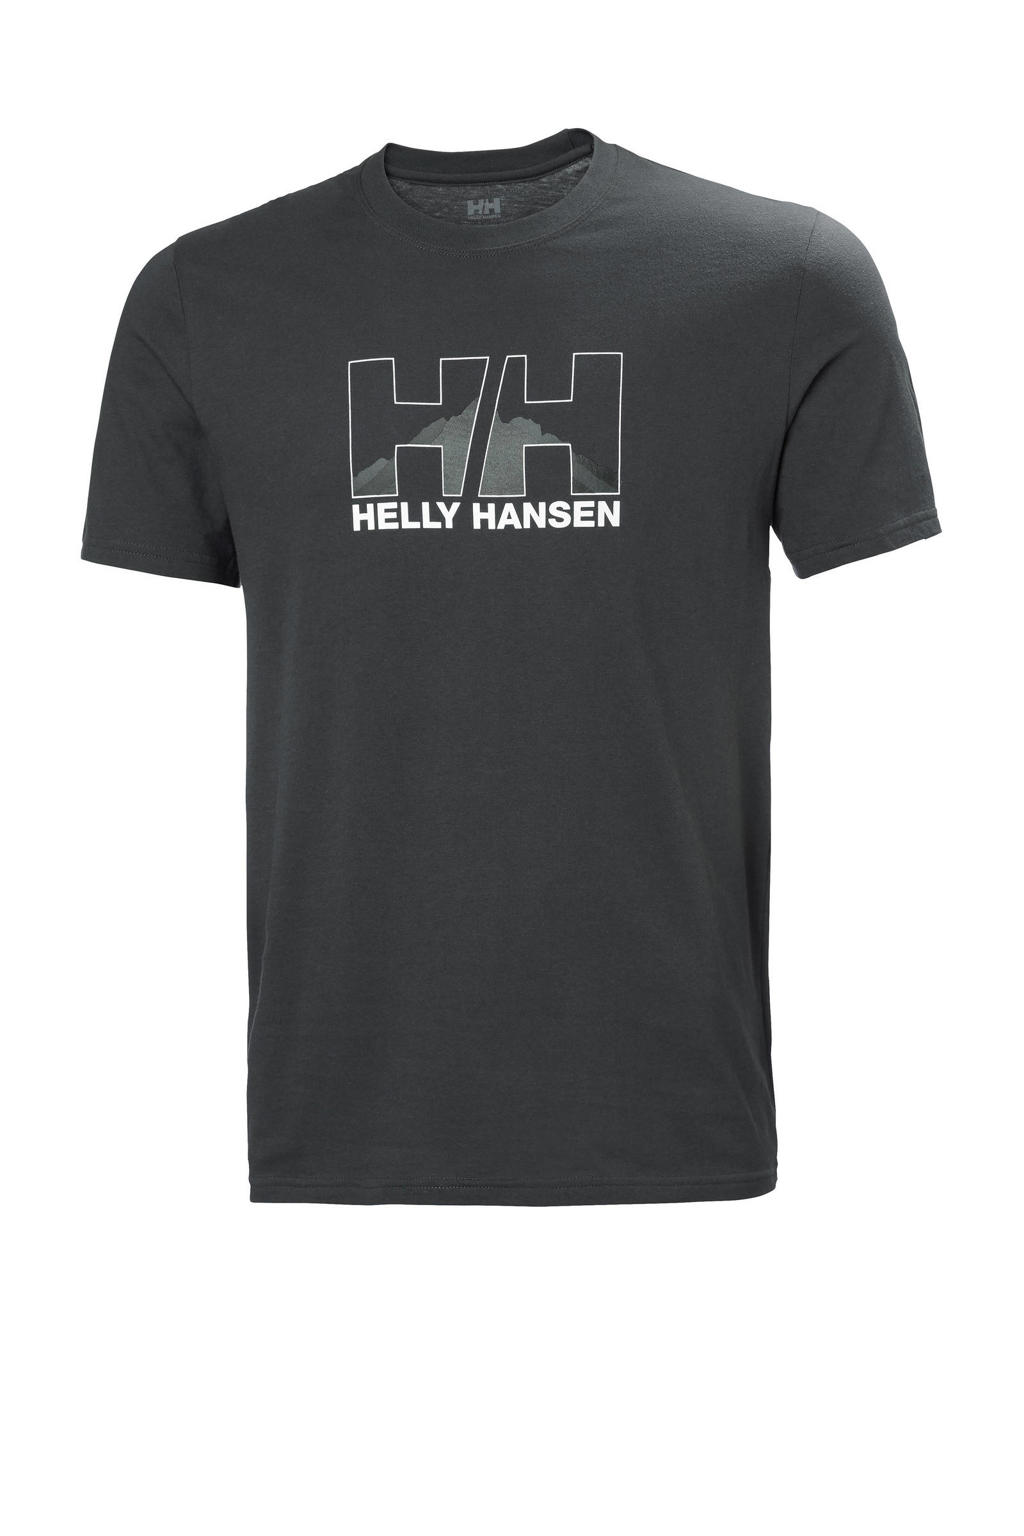 Antraciete heren Helly Hansen T-shirt van katoen met printopdruk, korte mouwen en ronde hals